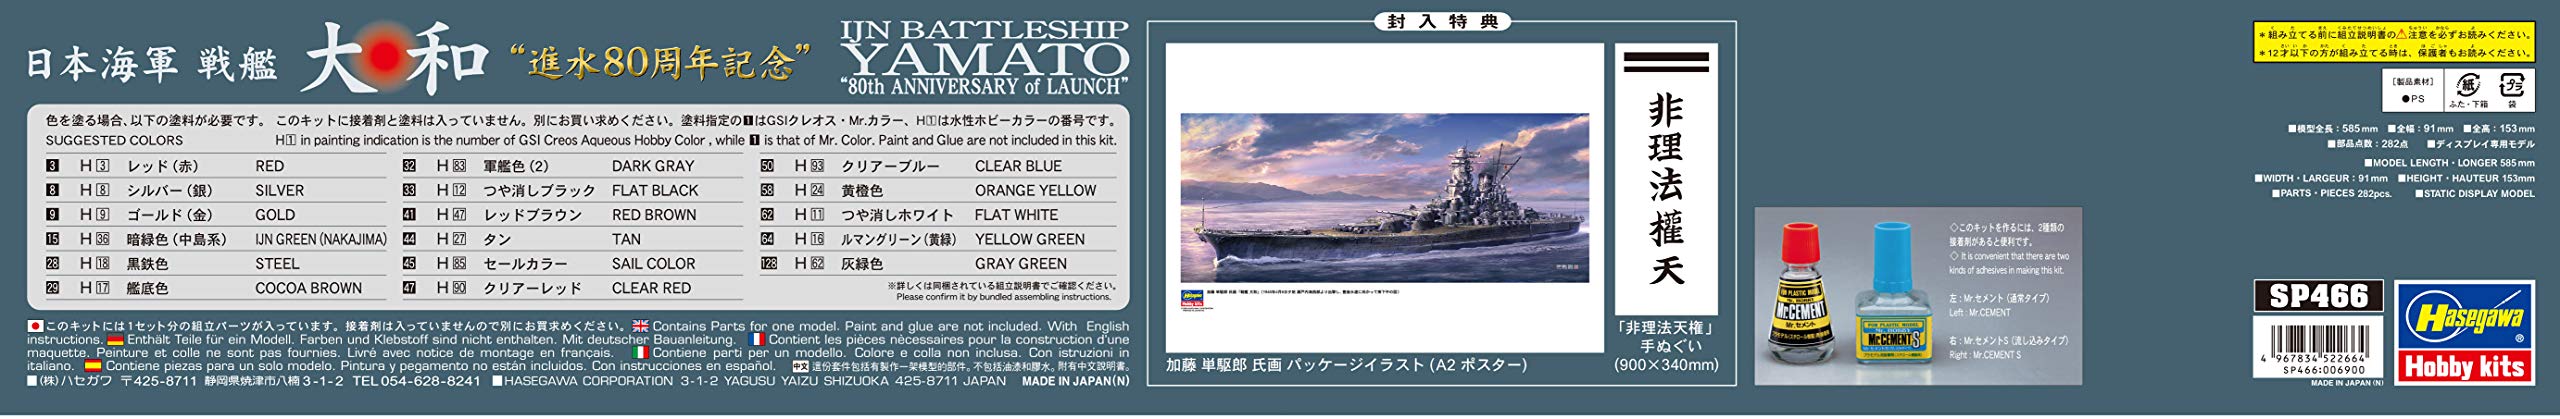 Hasegawa 1/450 Ijn Battleship Yamato Launch 80th Anniversary Japanese Plastic Model